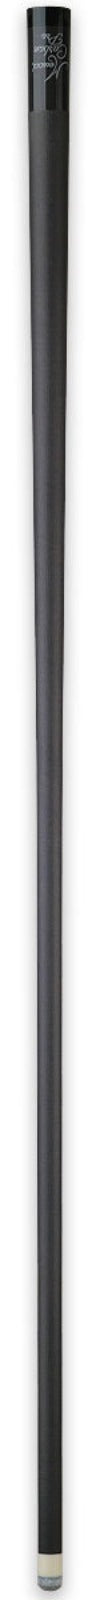 Meucci Carbon Fiber Pro Shaft - 12.75mm -Meucci